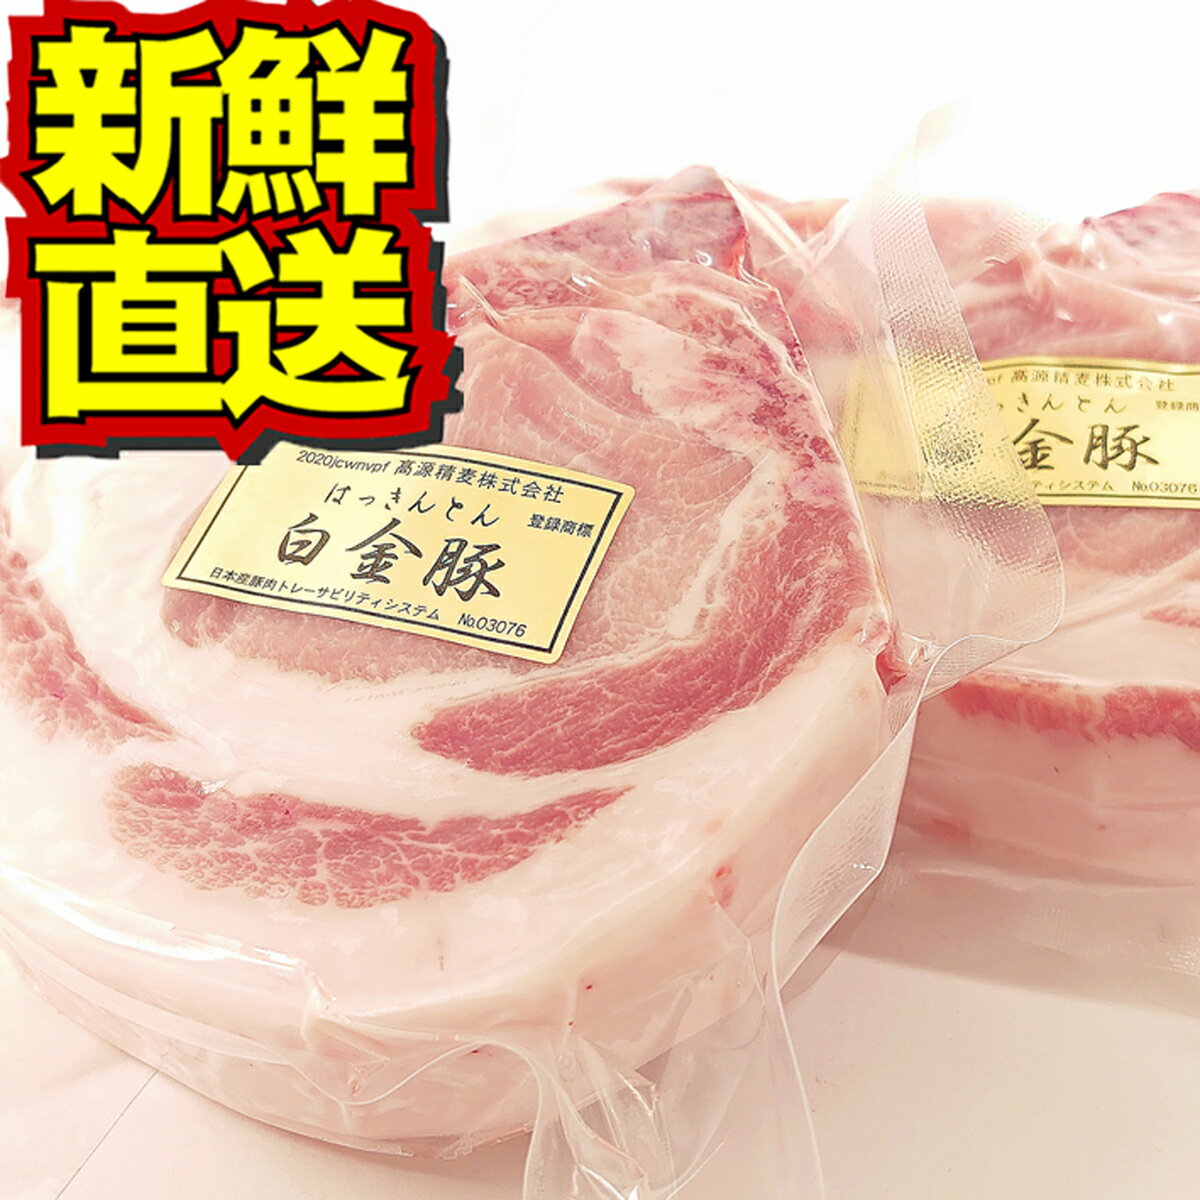 【送料無料・冷凍配送】白金豚 Lボーン 2枚 セット 国産 